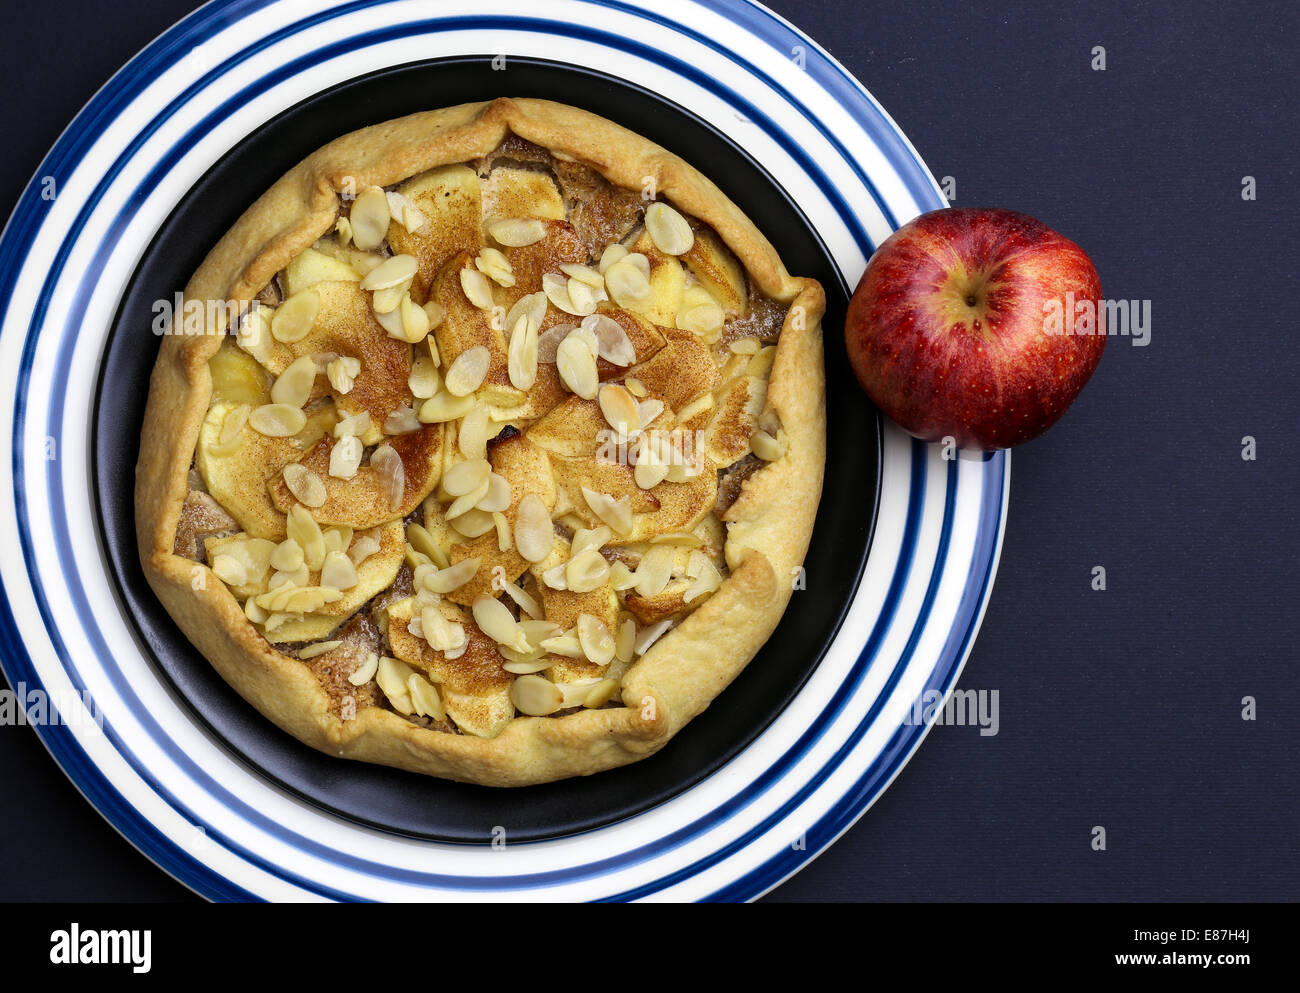 Galette Crostata süßen Kuchen Apfelkuchen auf schwarz und blau gestreifte Platte auf dunklem Hintergrund Stockfoto